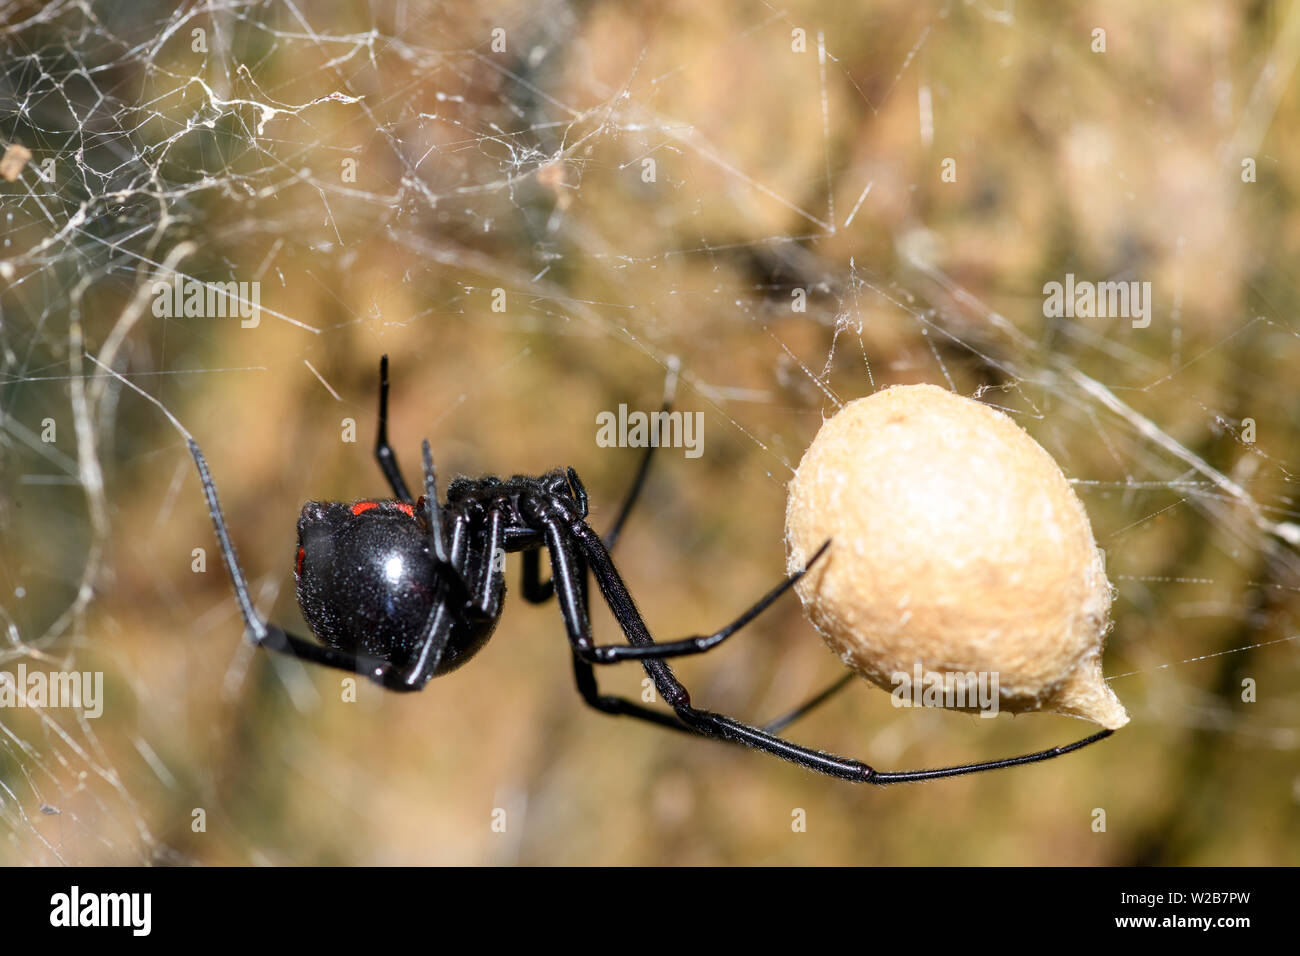 Southern Black Widow Latrodectus Mactans Or Shoe Button Spider